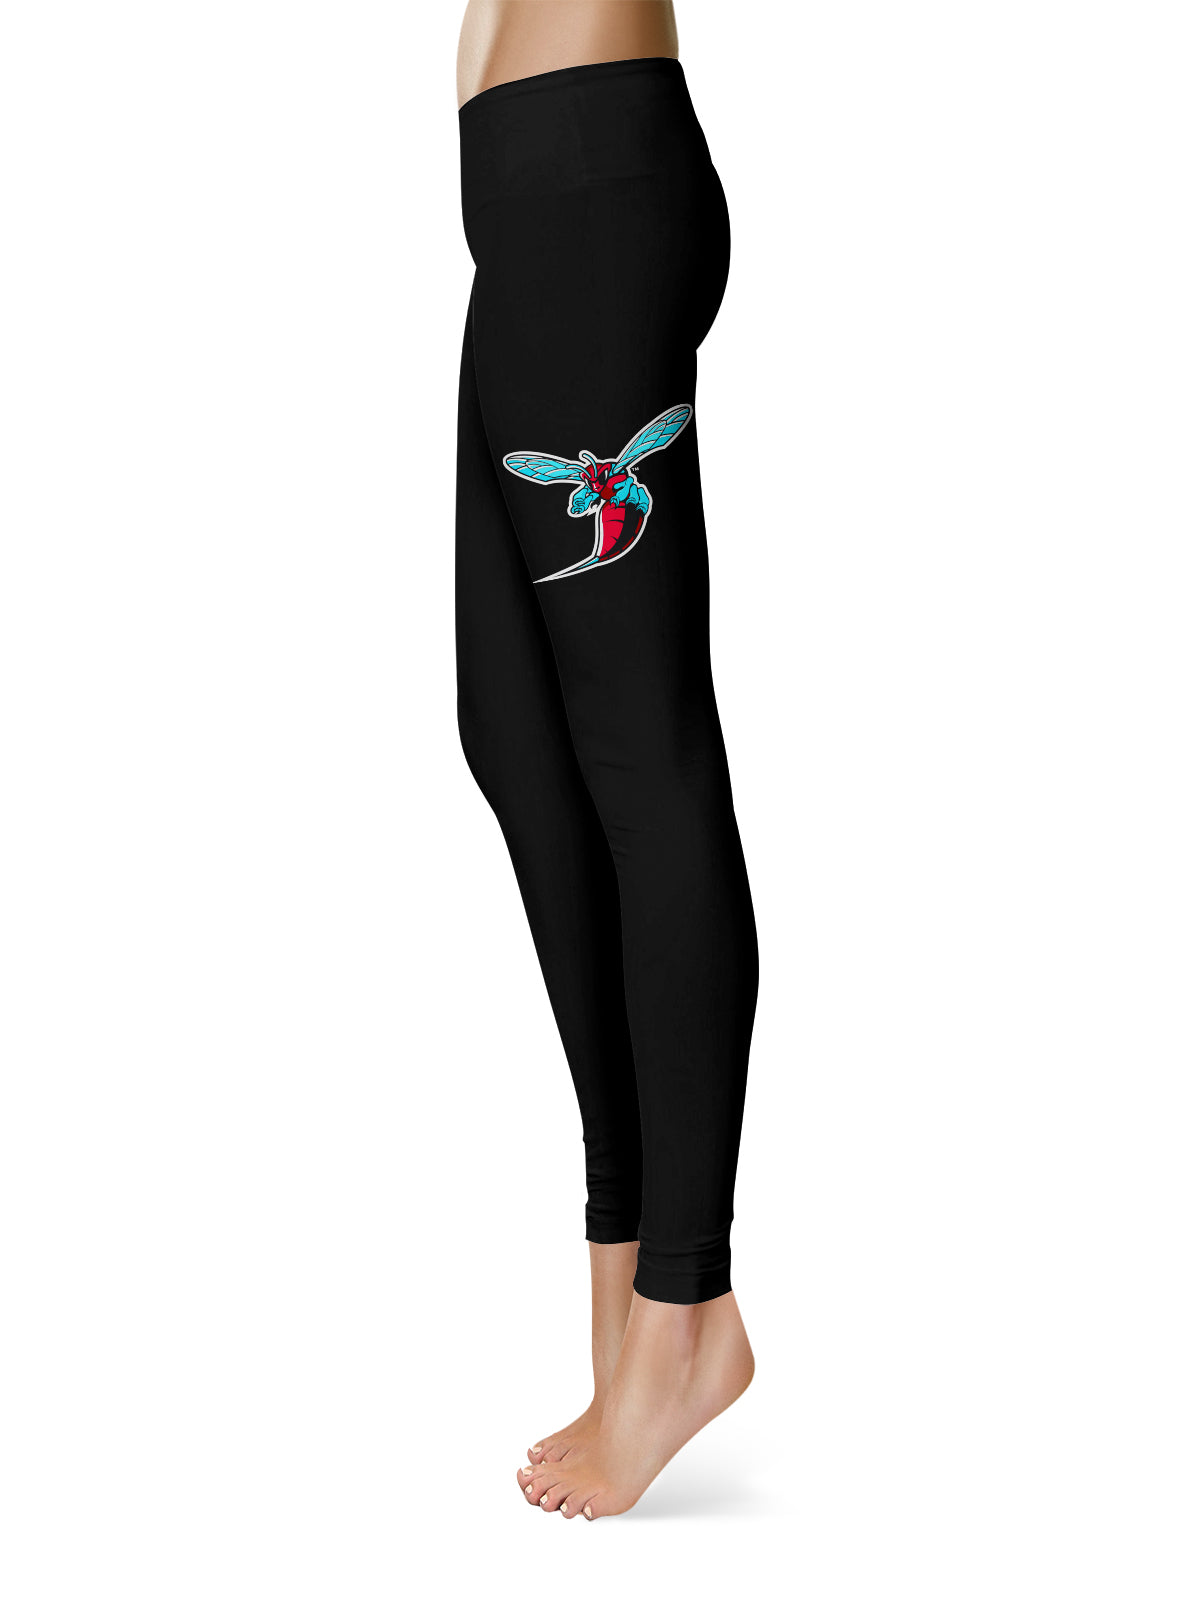 Delaware State Hornets Vive La Fete Collegiate Large Logo on Thigh Women Black Yoga Leggings 2.5 Waist Tights